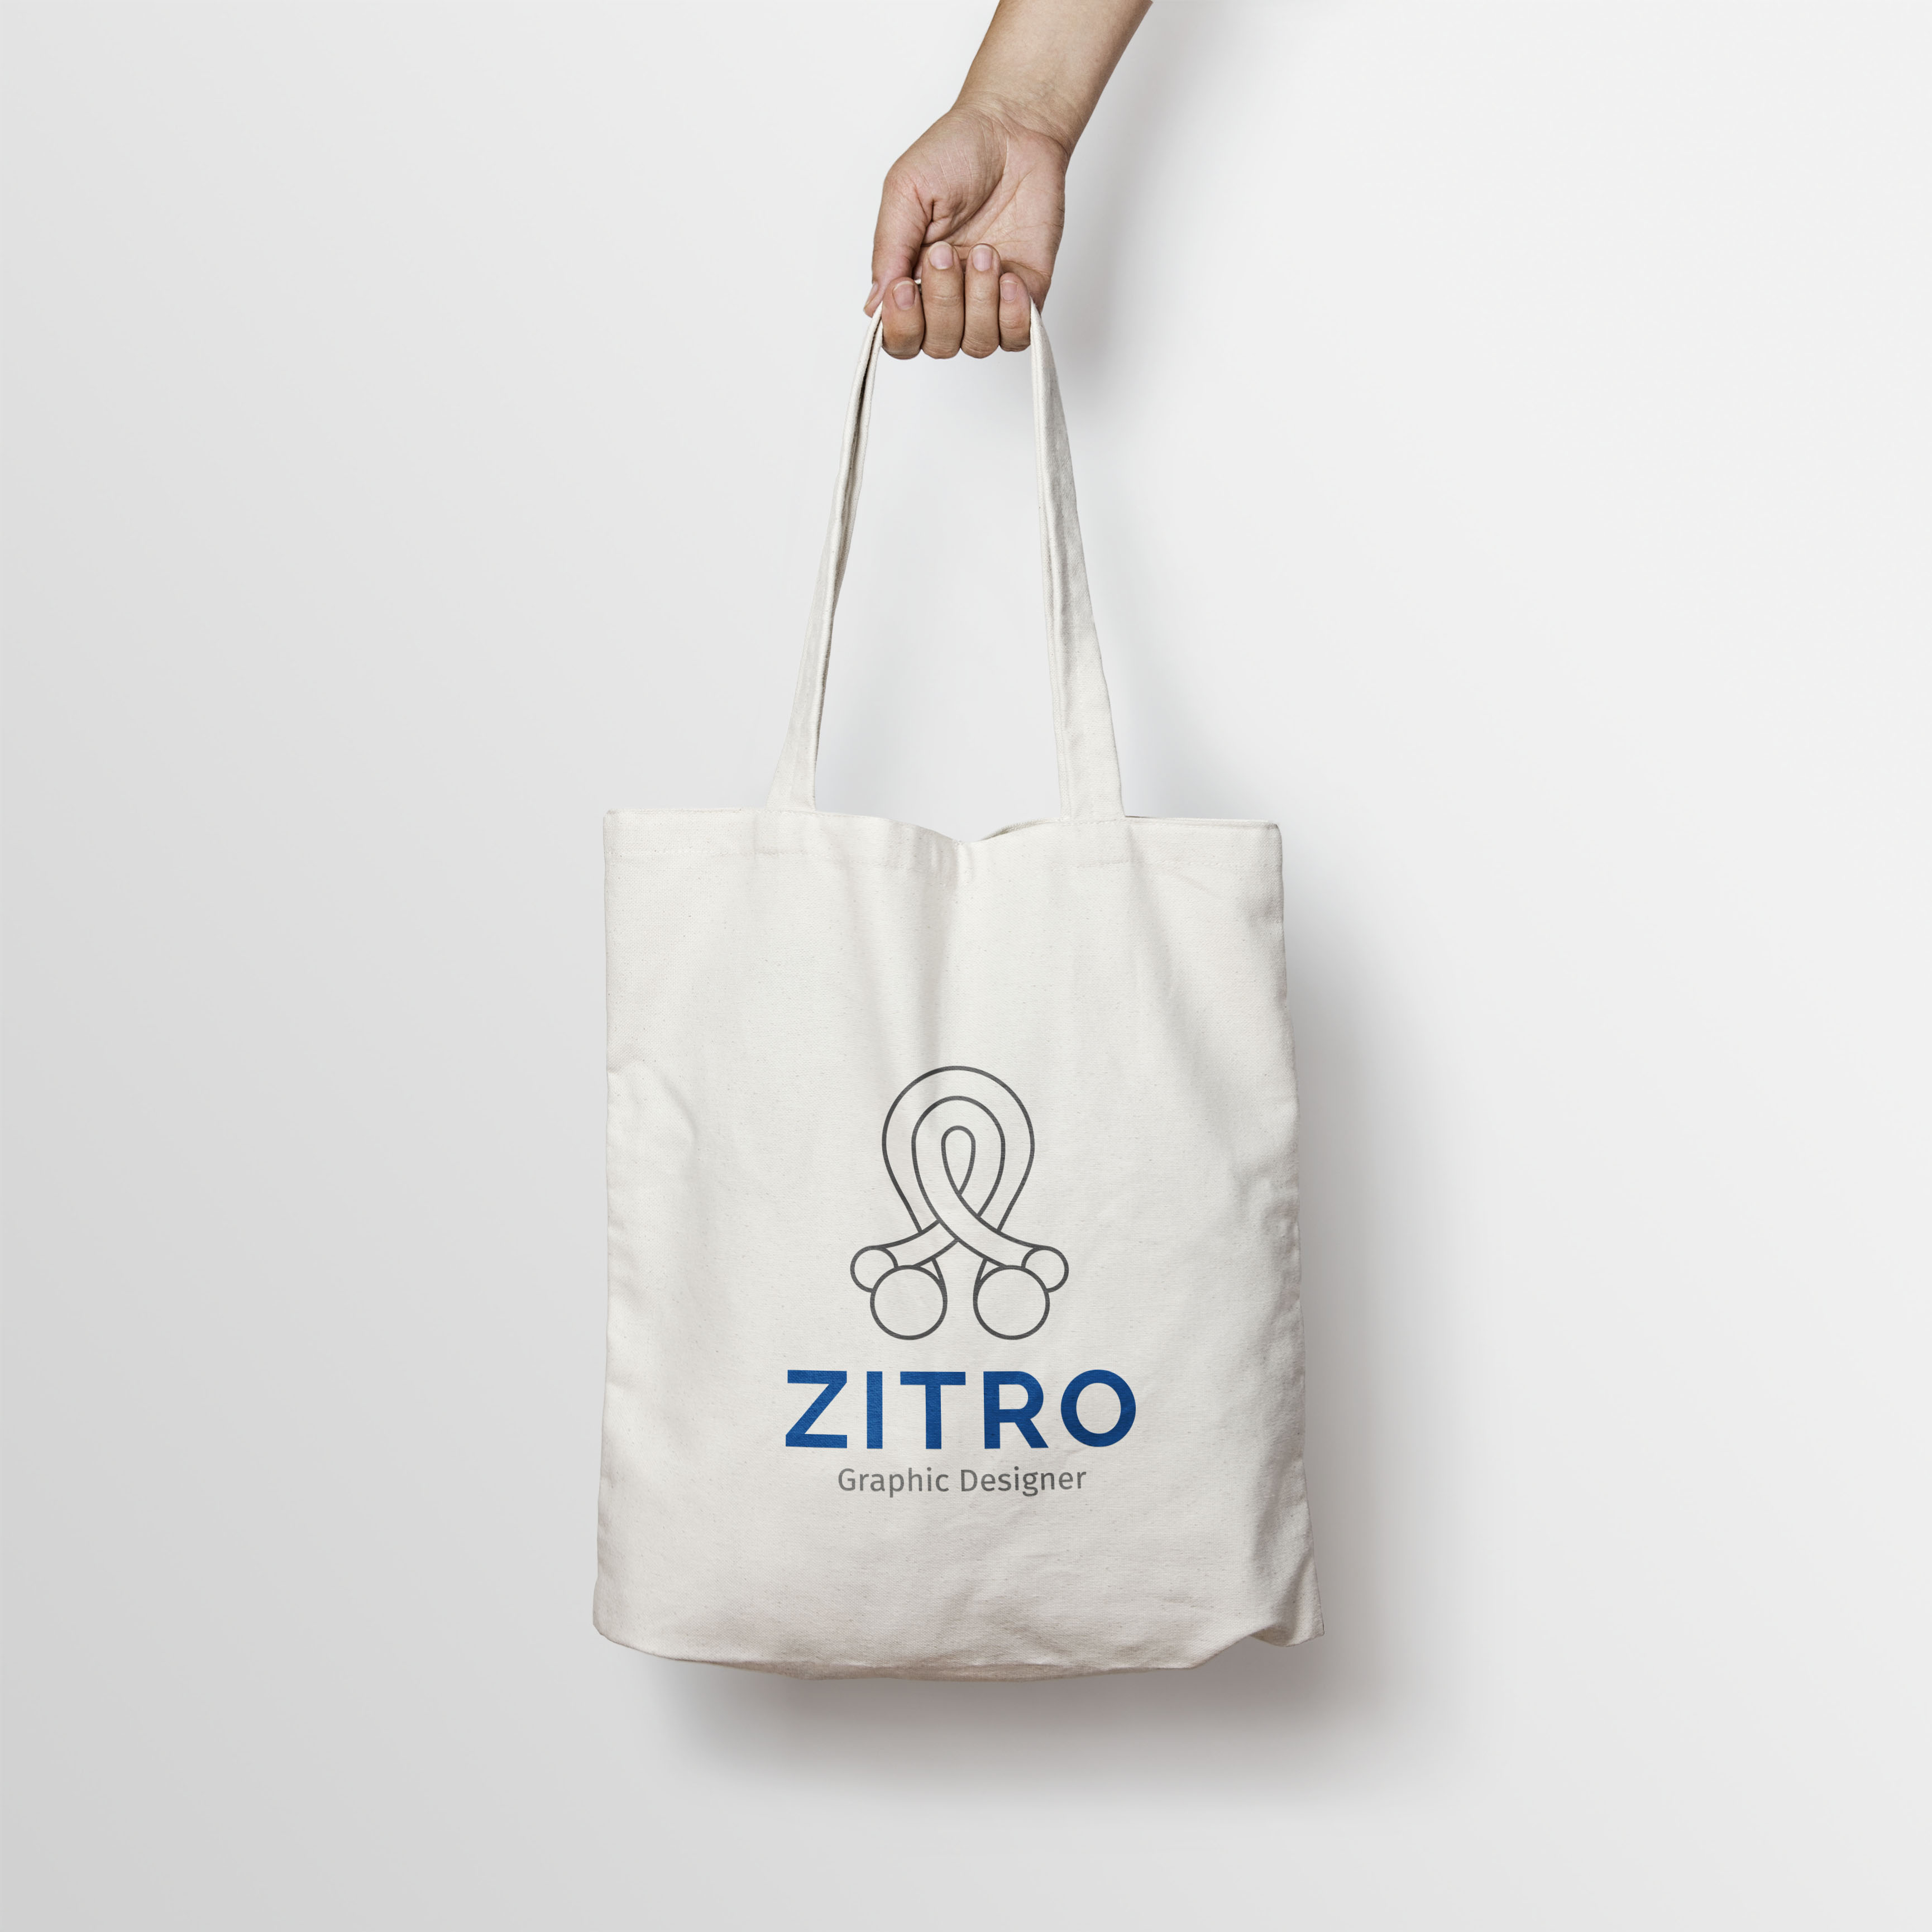 ZITRO Graphic Designer